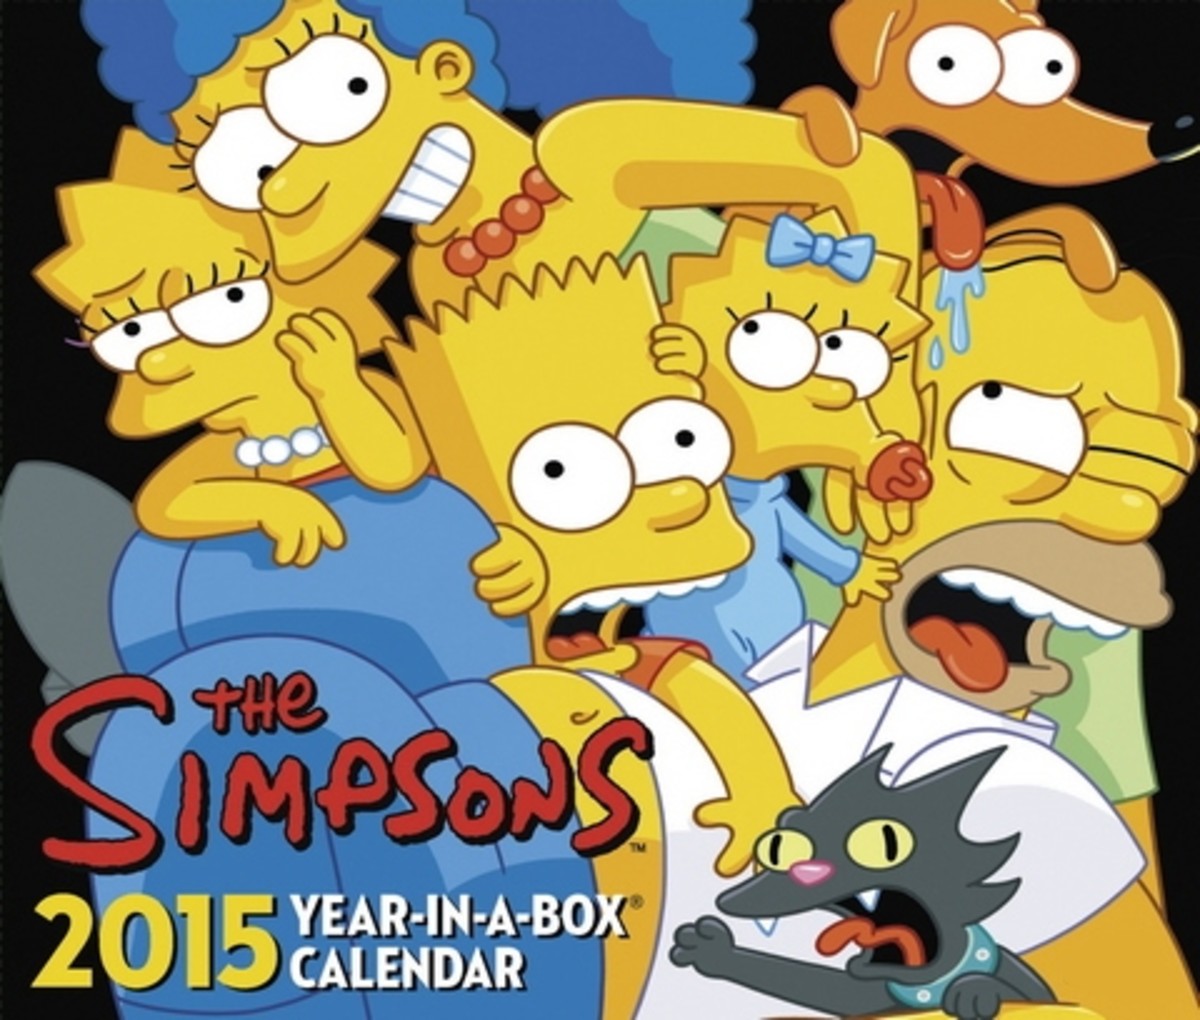 Simpsons vs South Park